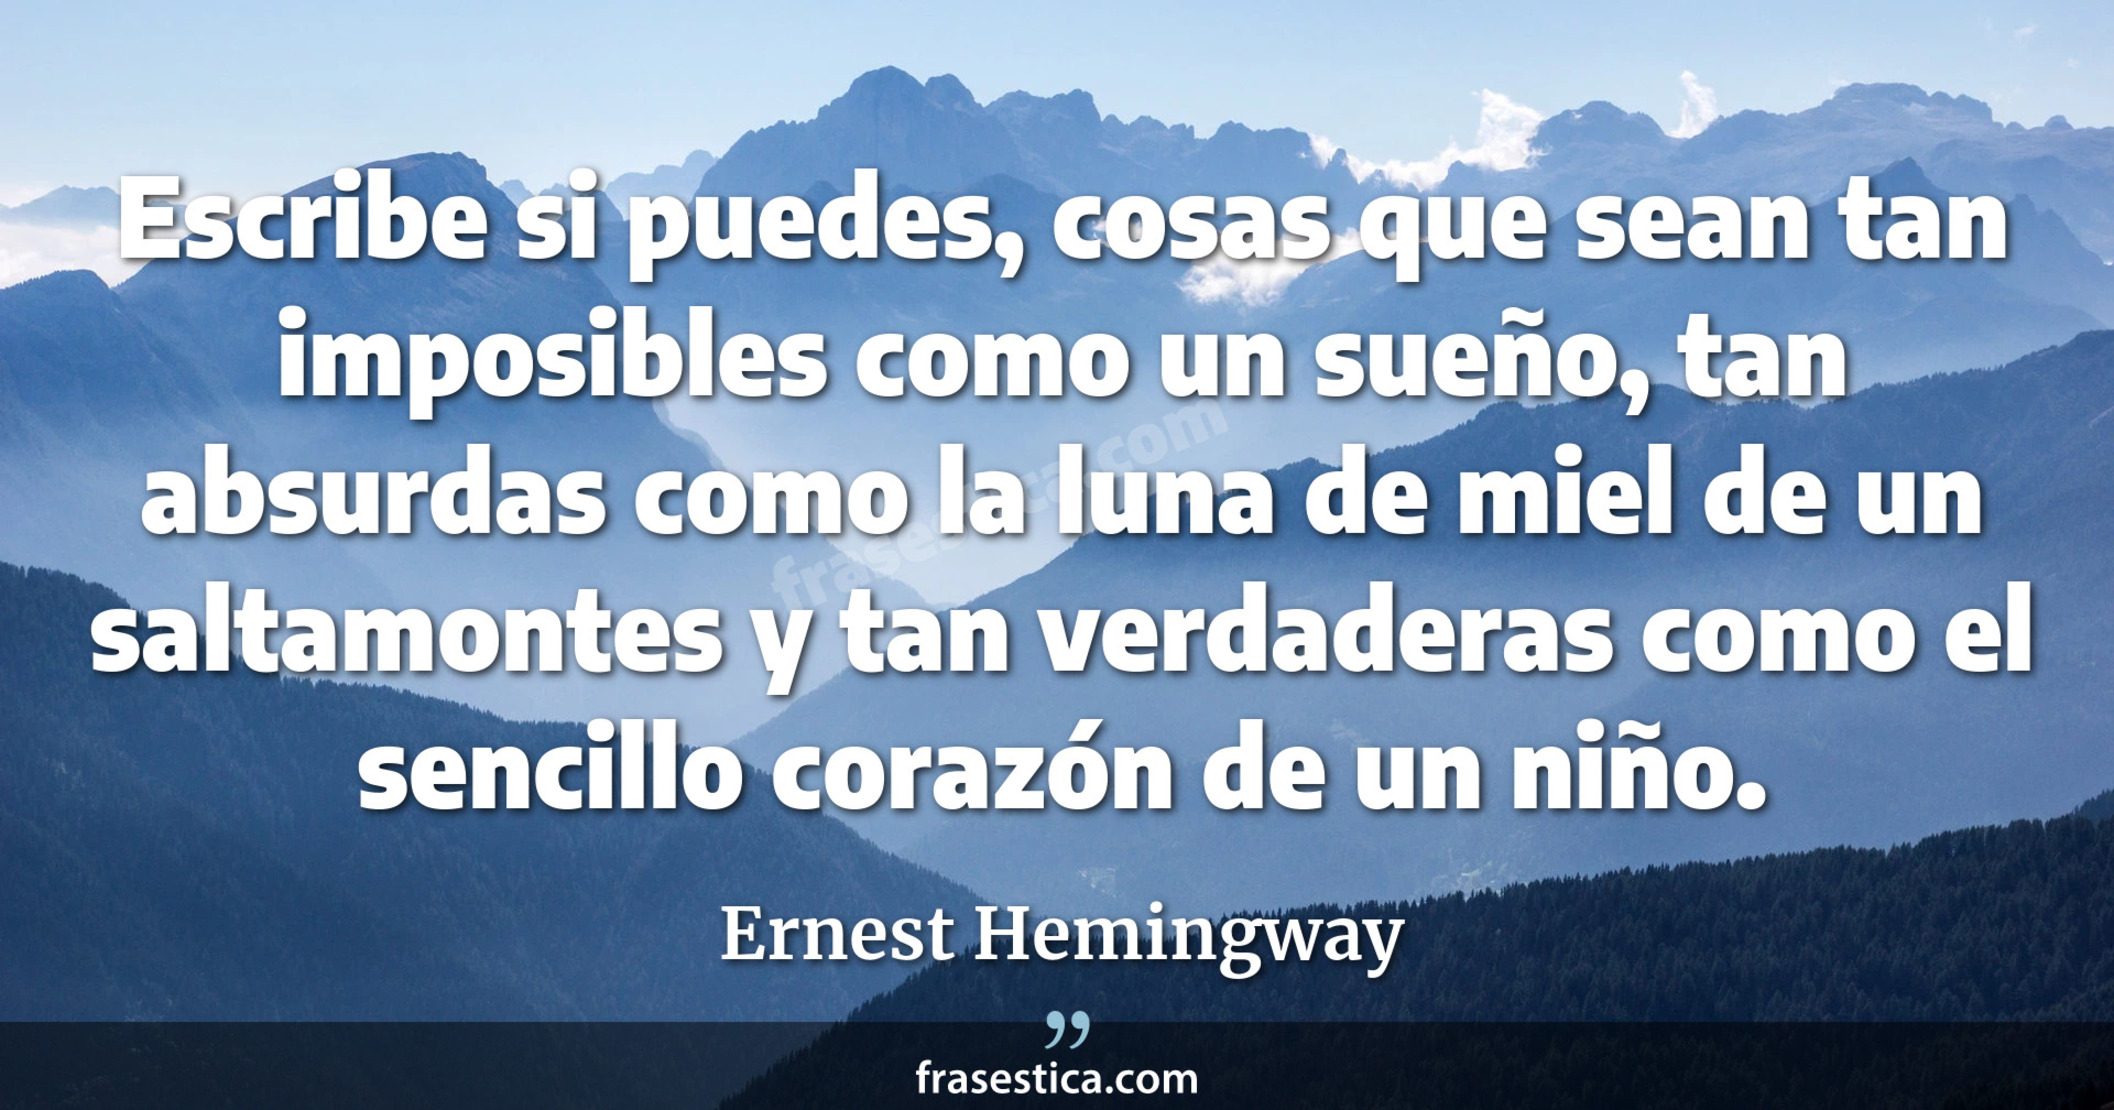 Escribe si puedes, cosas que sean tan imposibles como un sueño, tan absurdas como la luna de miel de un saltamontes y tan verdaderas como el sencillo corazón de un niño. - Ernest Hemingway